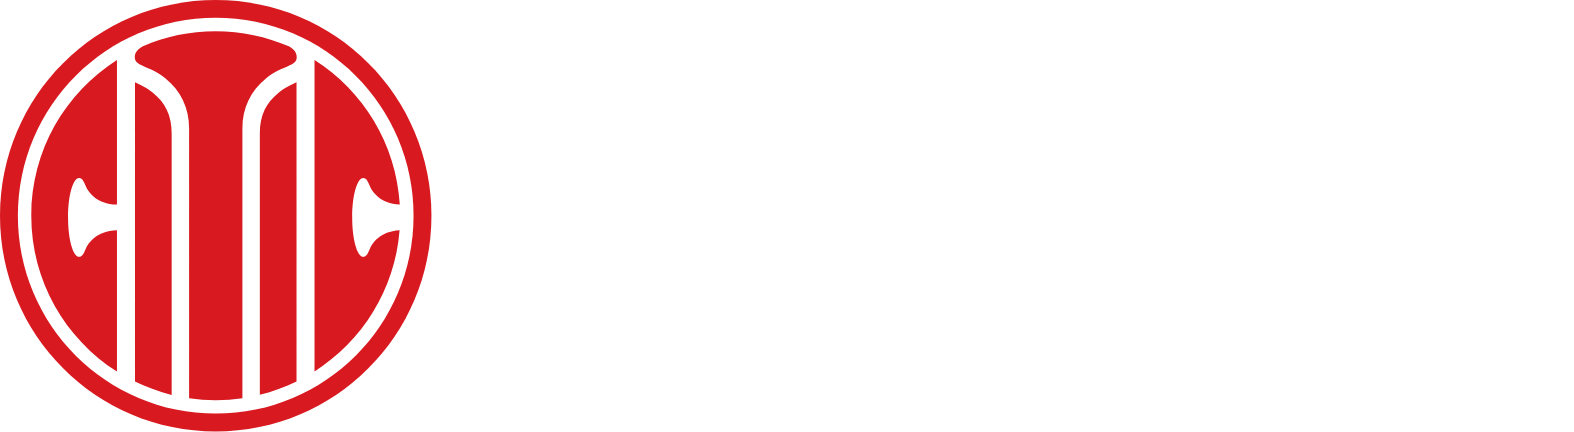 CITIC Bank logo grand pour les fonds sombres (PNG transparent)